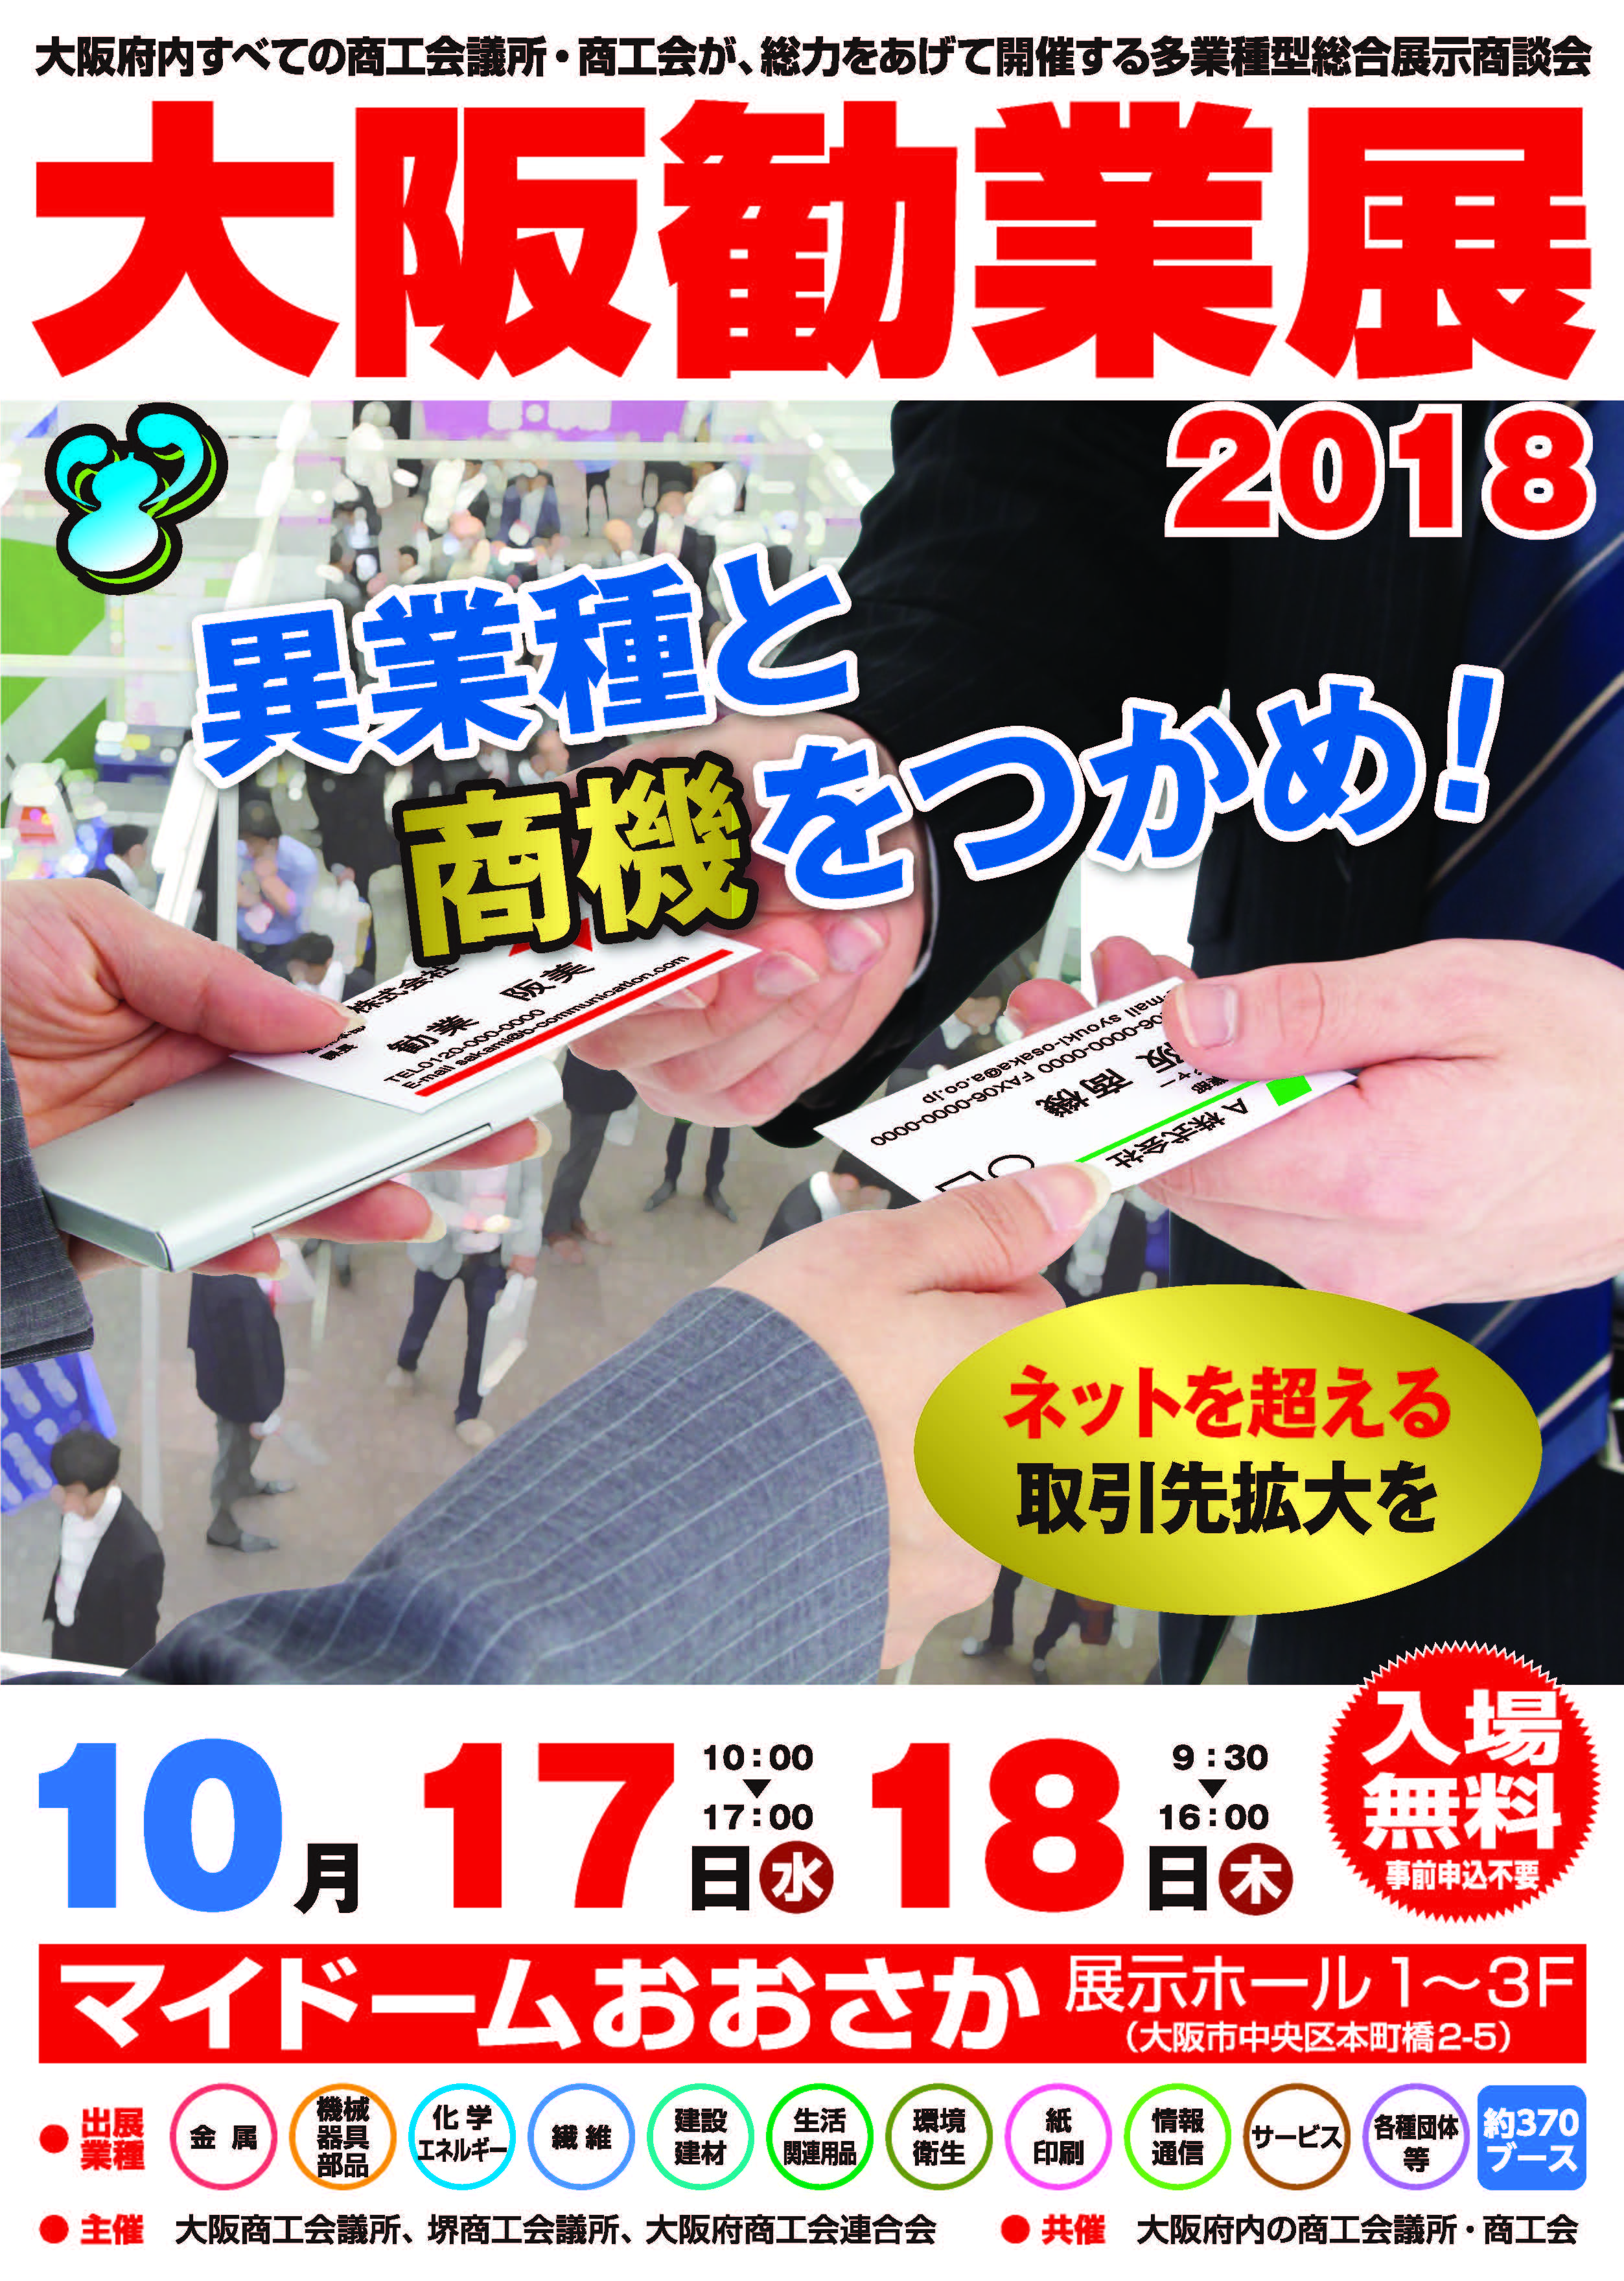 大阪勧業展2018